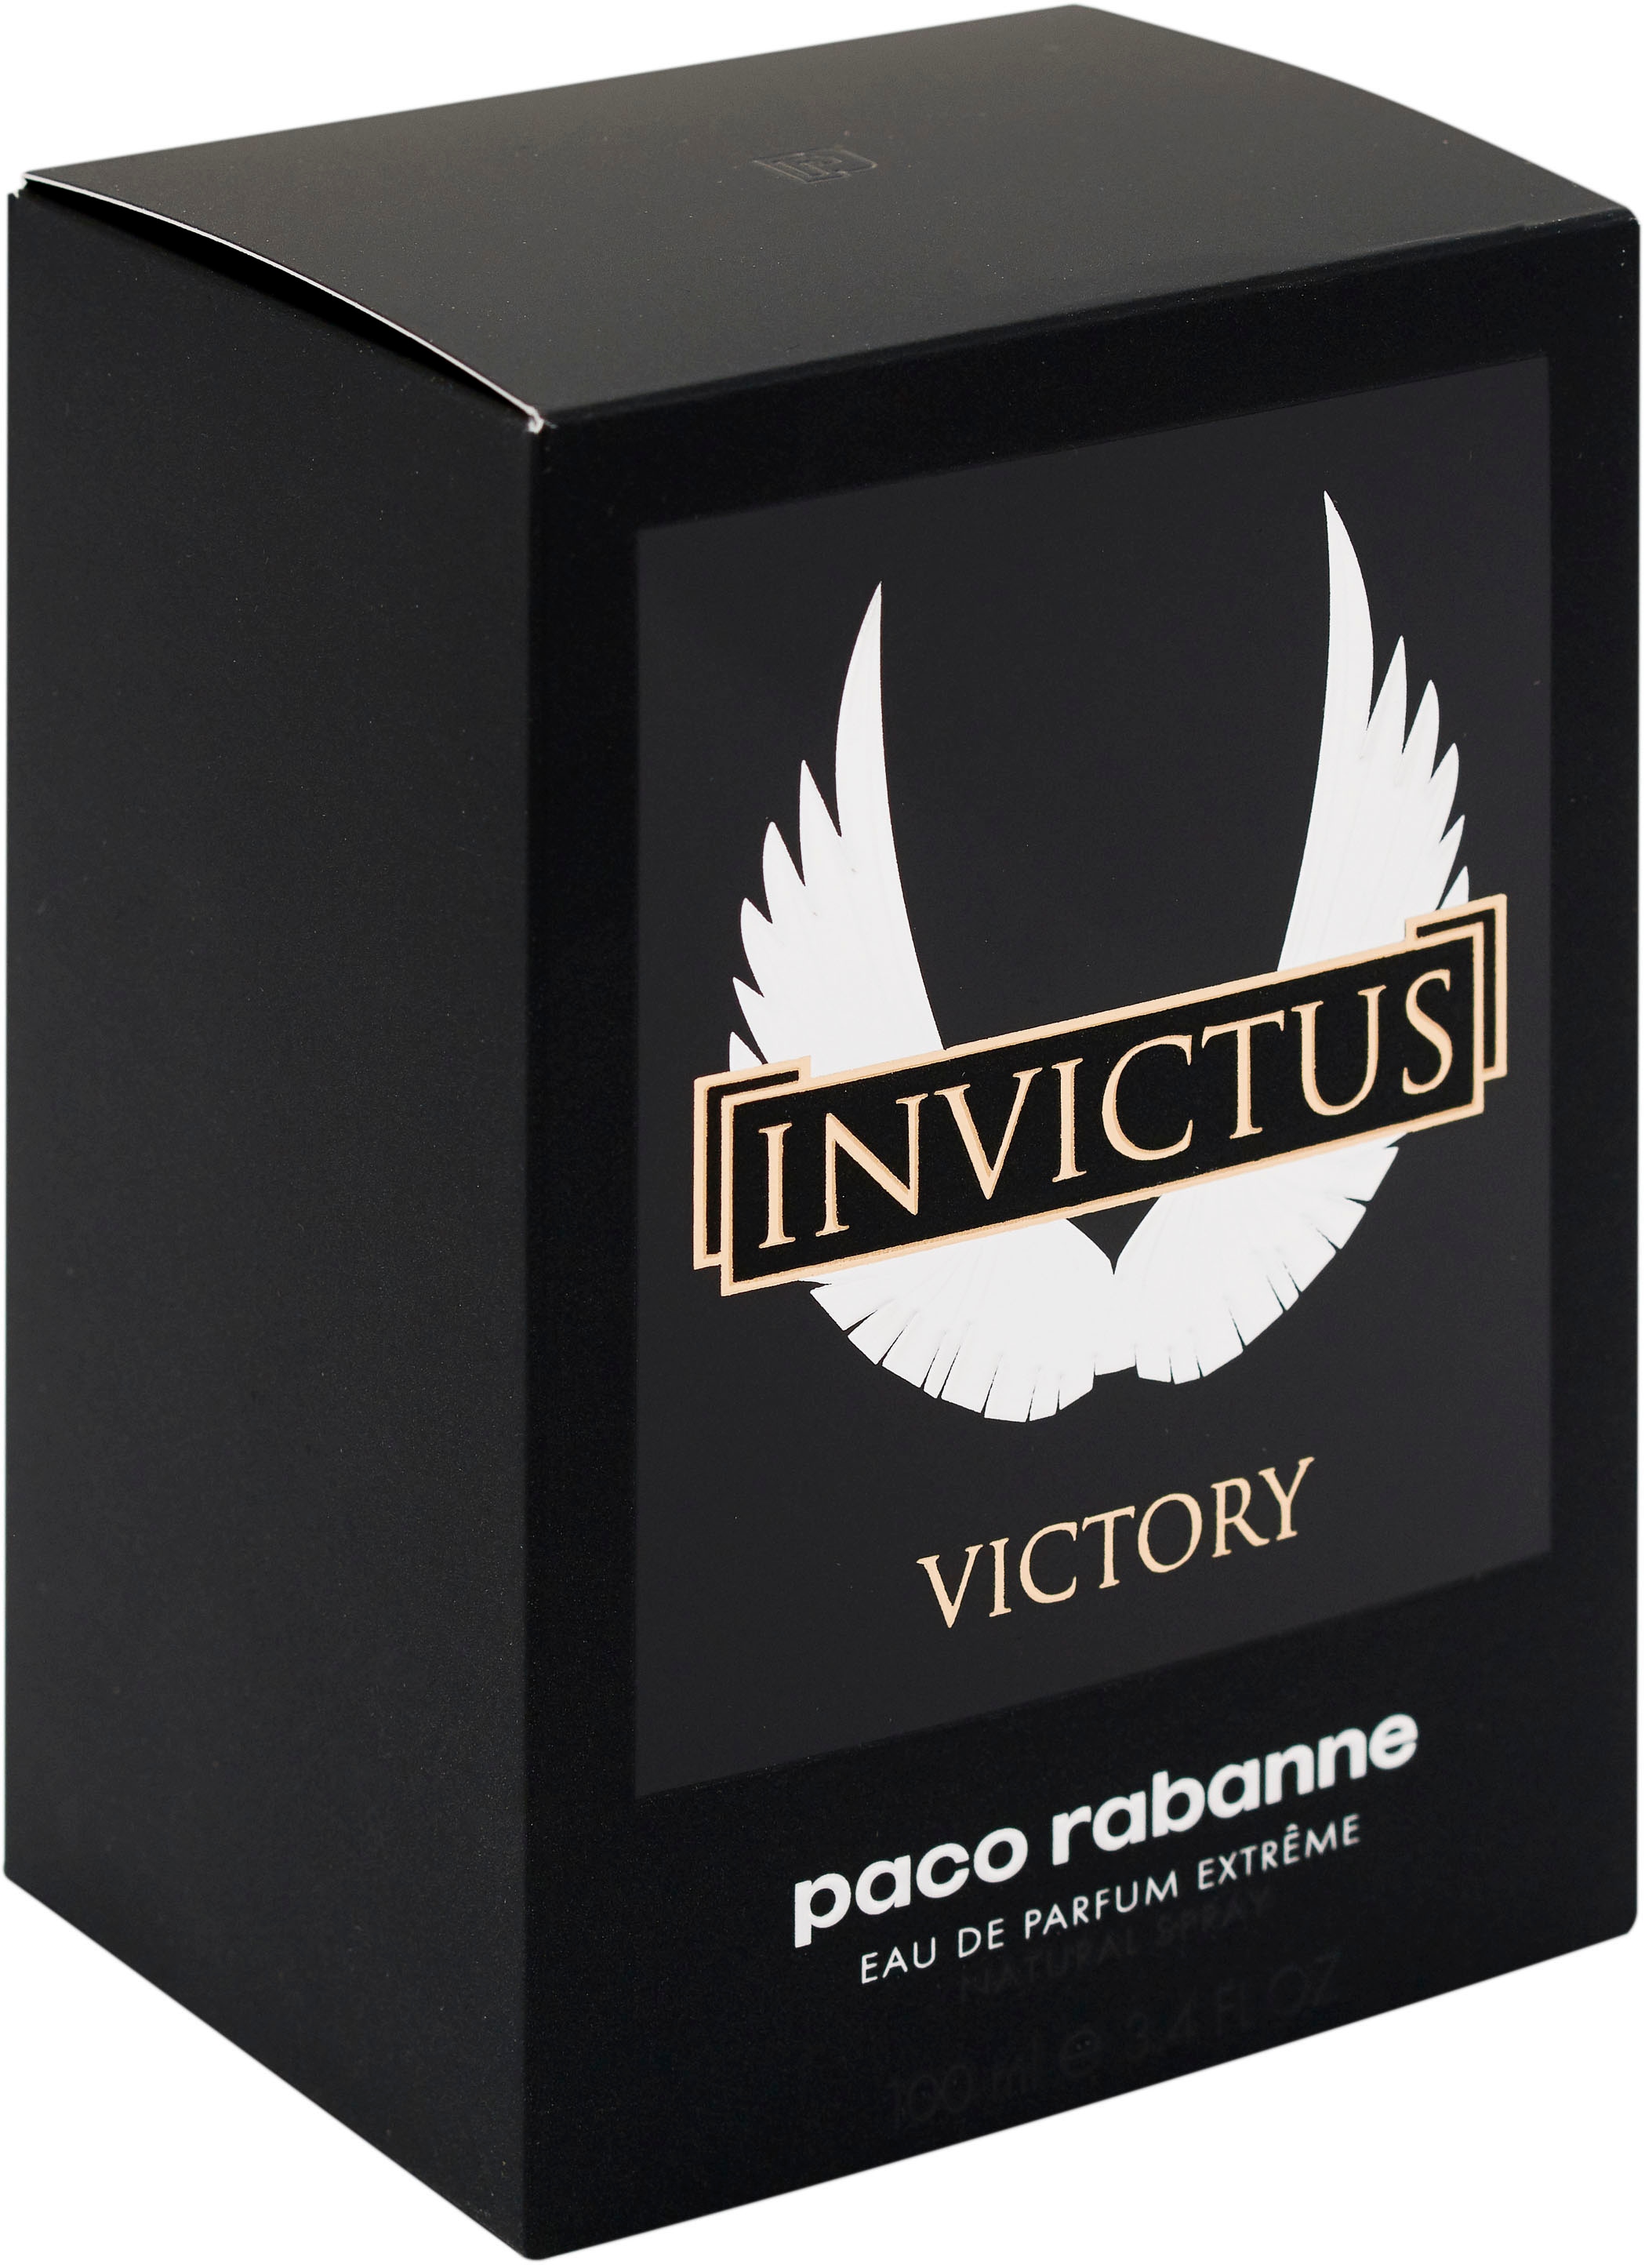 paco rabanne Eau de Parfum »Invictus Victory«